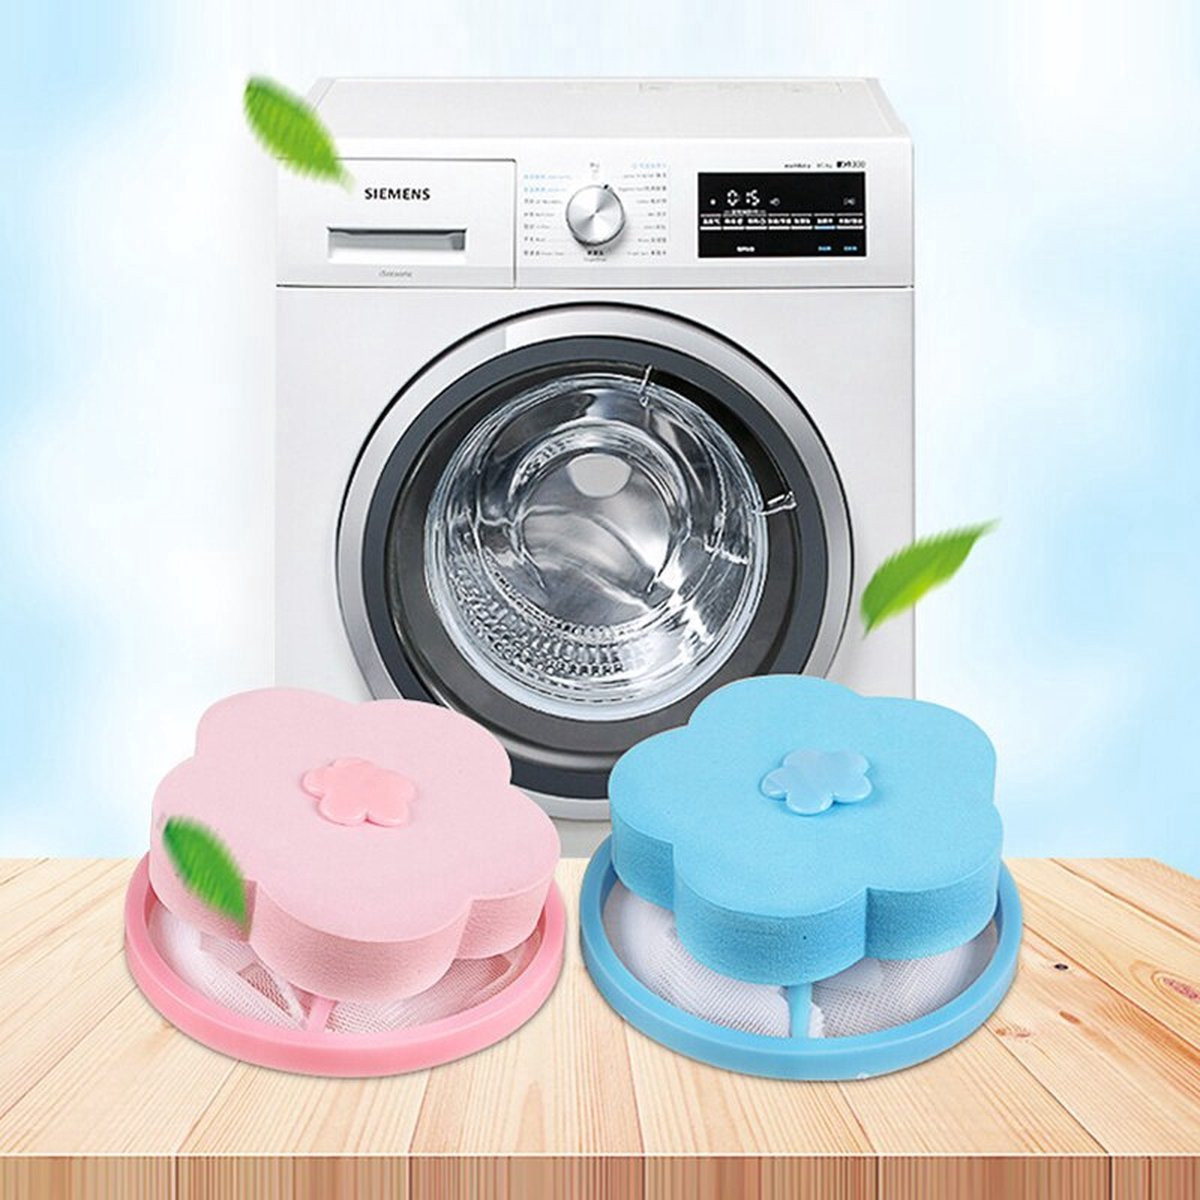 UP / Herbruikbaar Wasmachine Filter / Haar Vanger / Drijvend Vangnet / Wasmachine Reiniger / Wasmachine Cleaner / Blauw / Roze / 2 Stuks / 10 cm